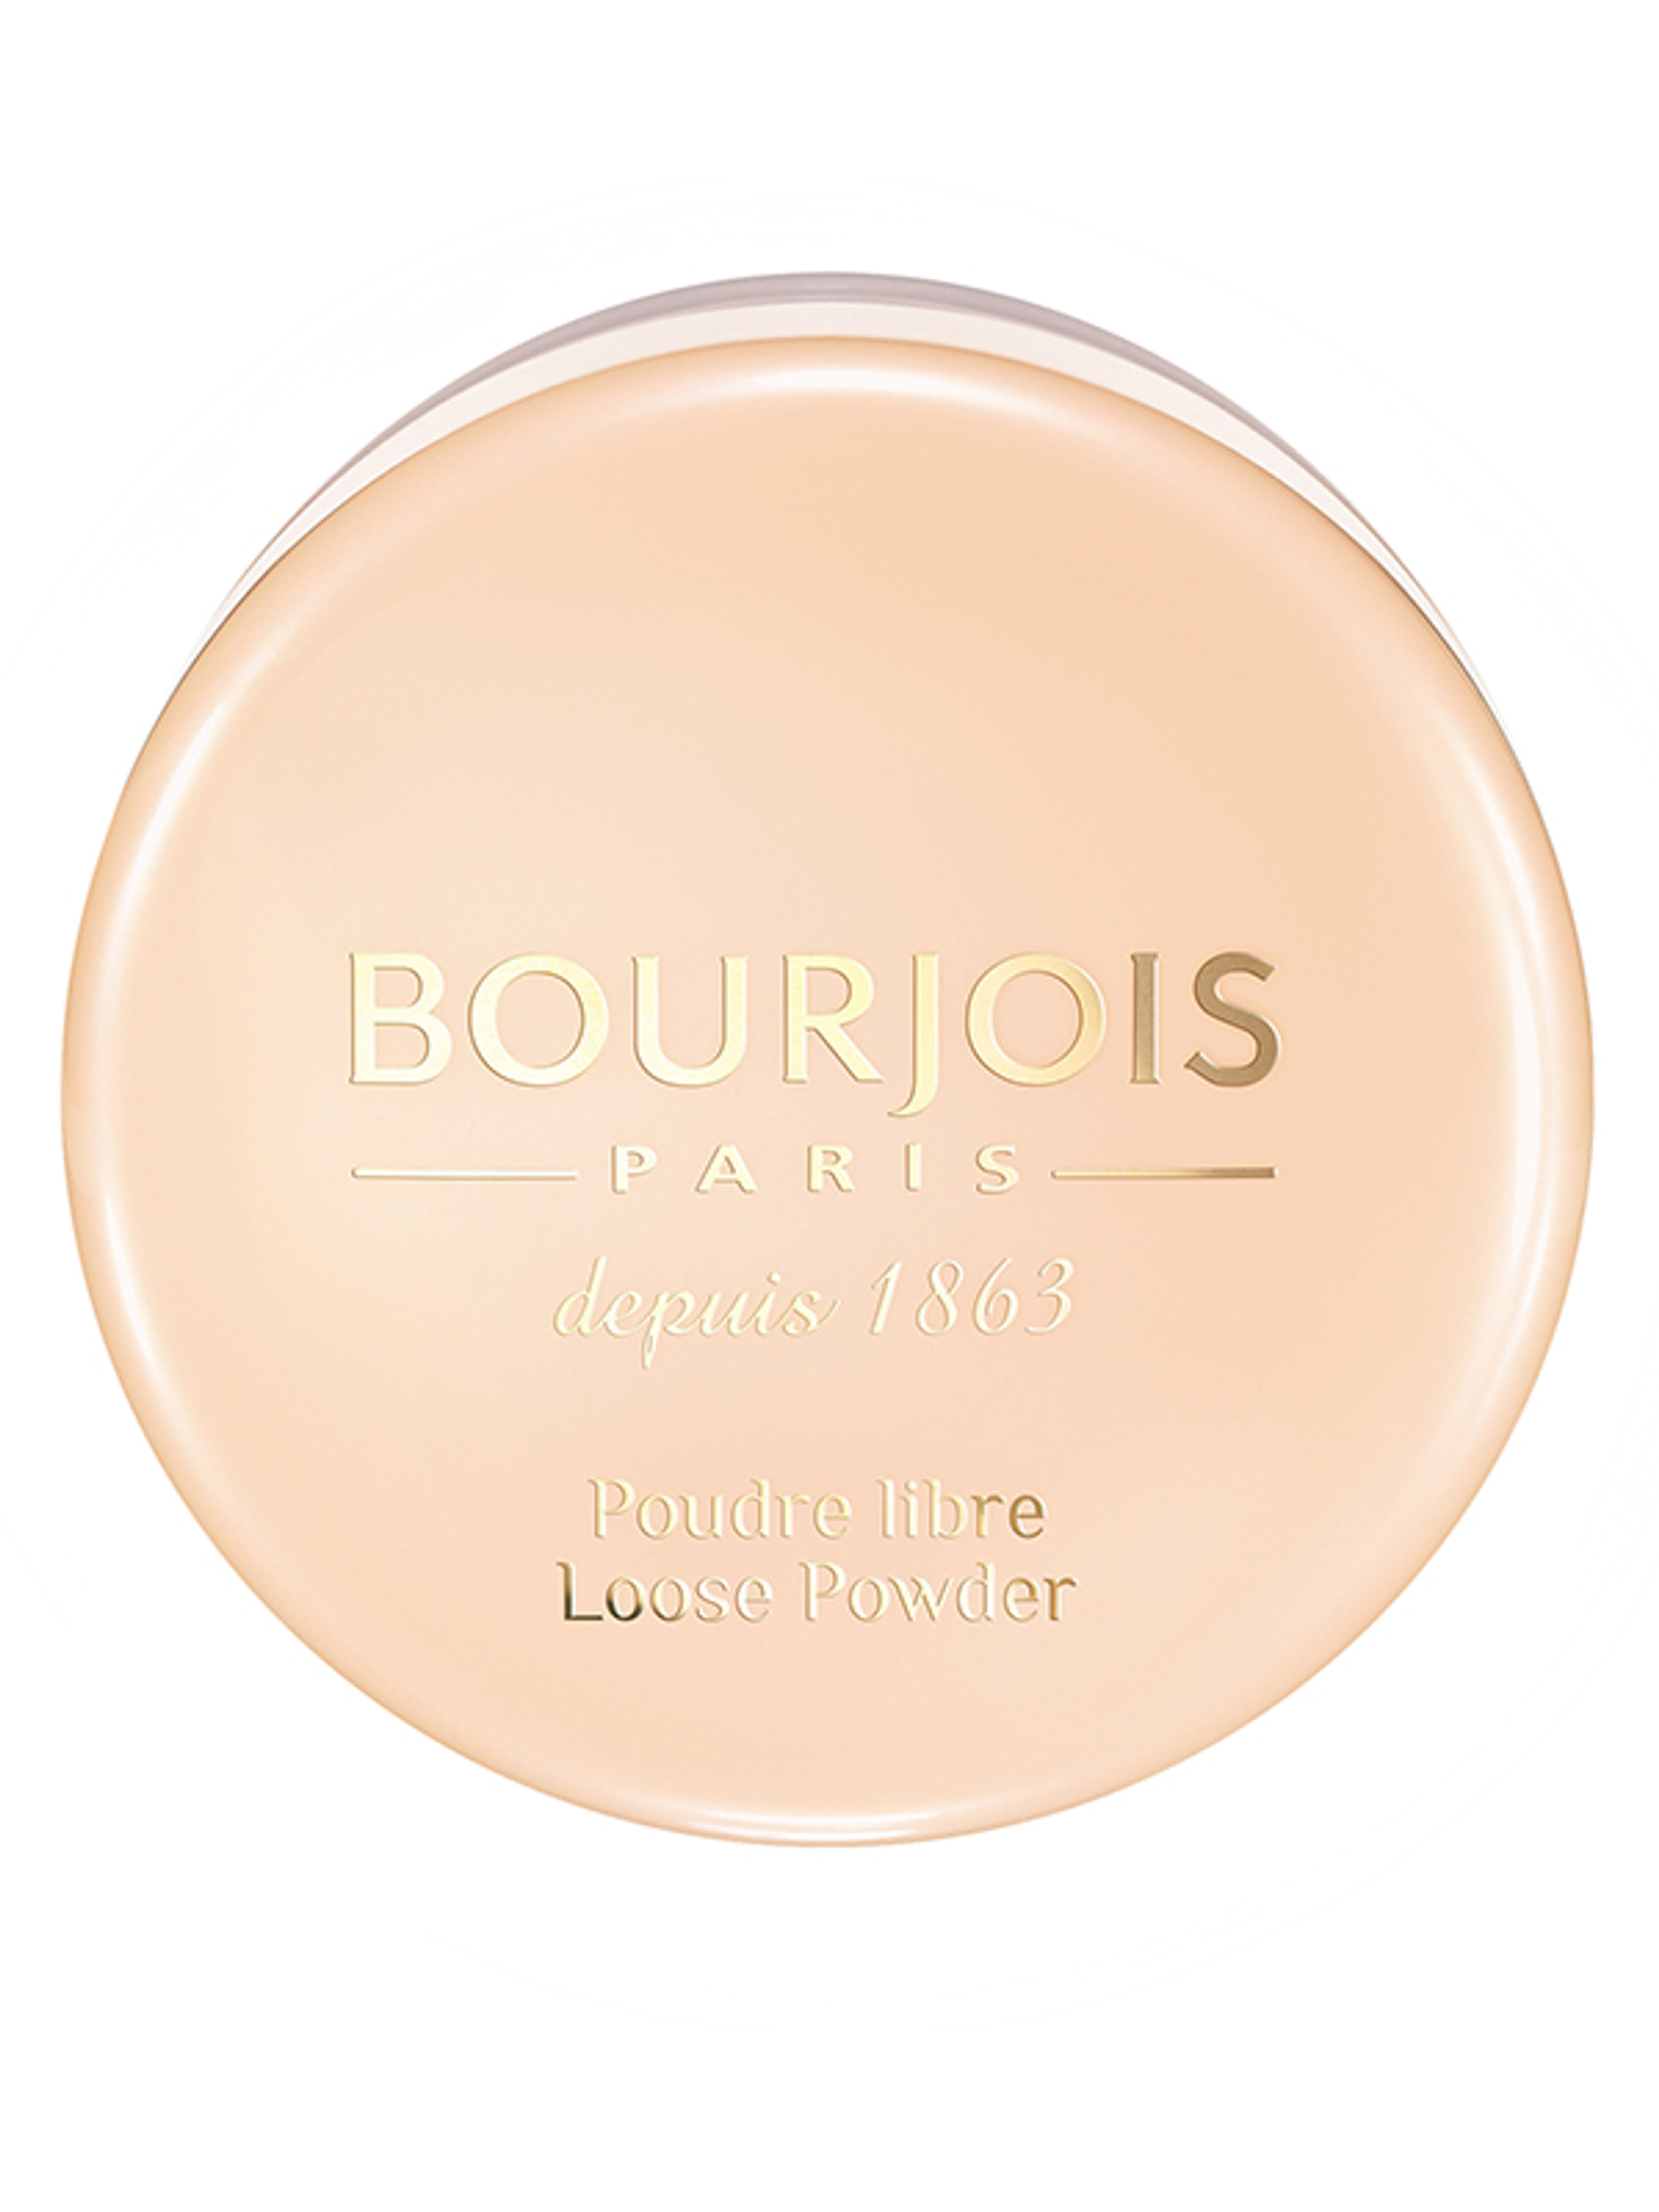 Bourjois Loose Powder porpúder /02 - 1 db